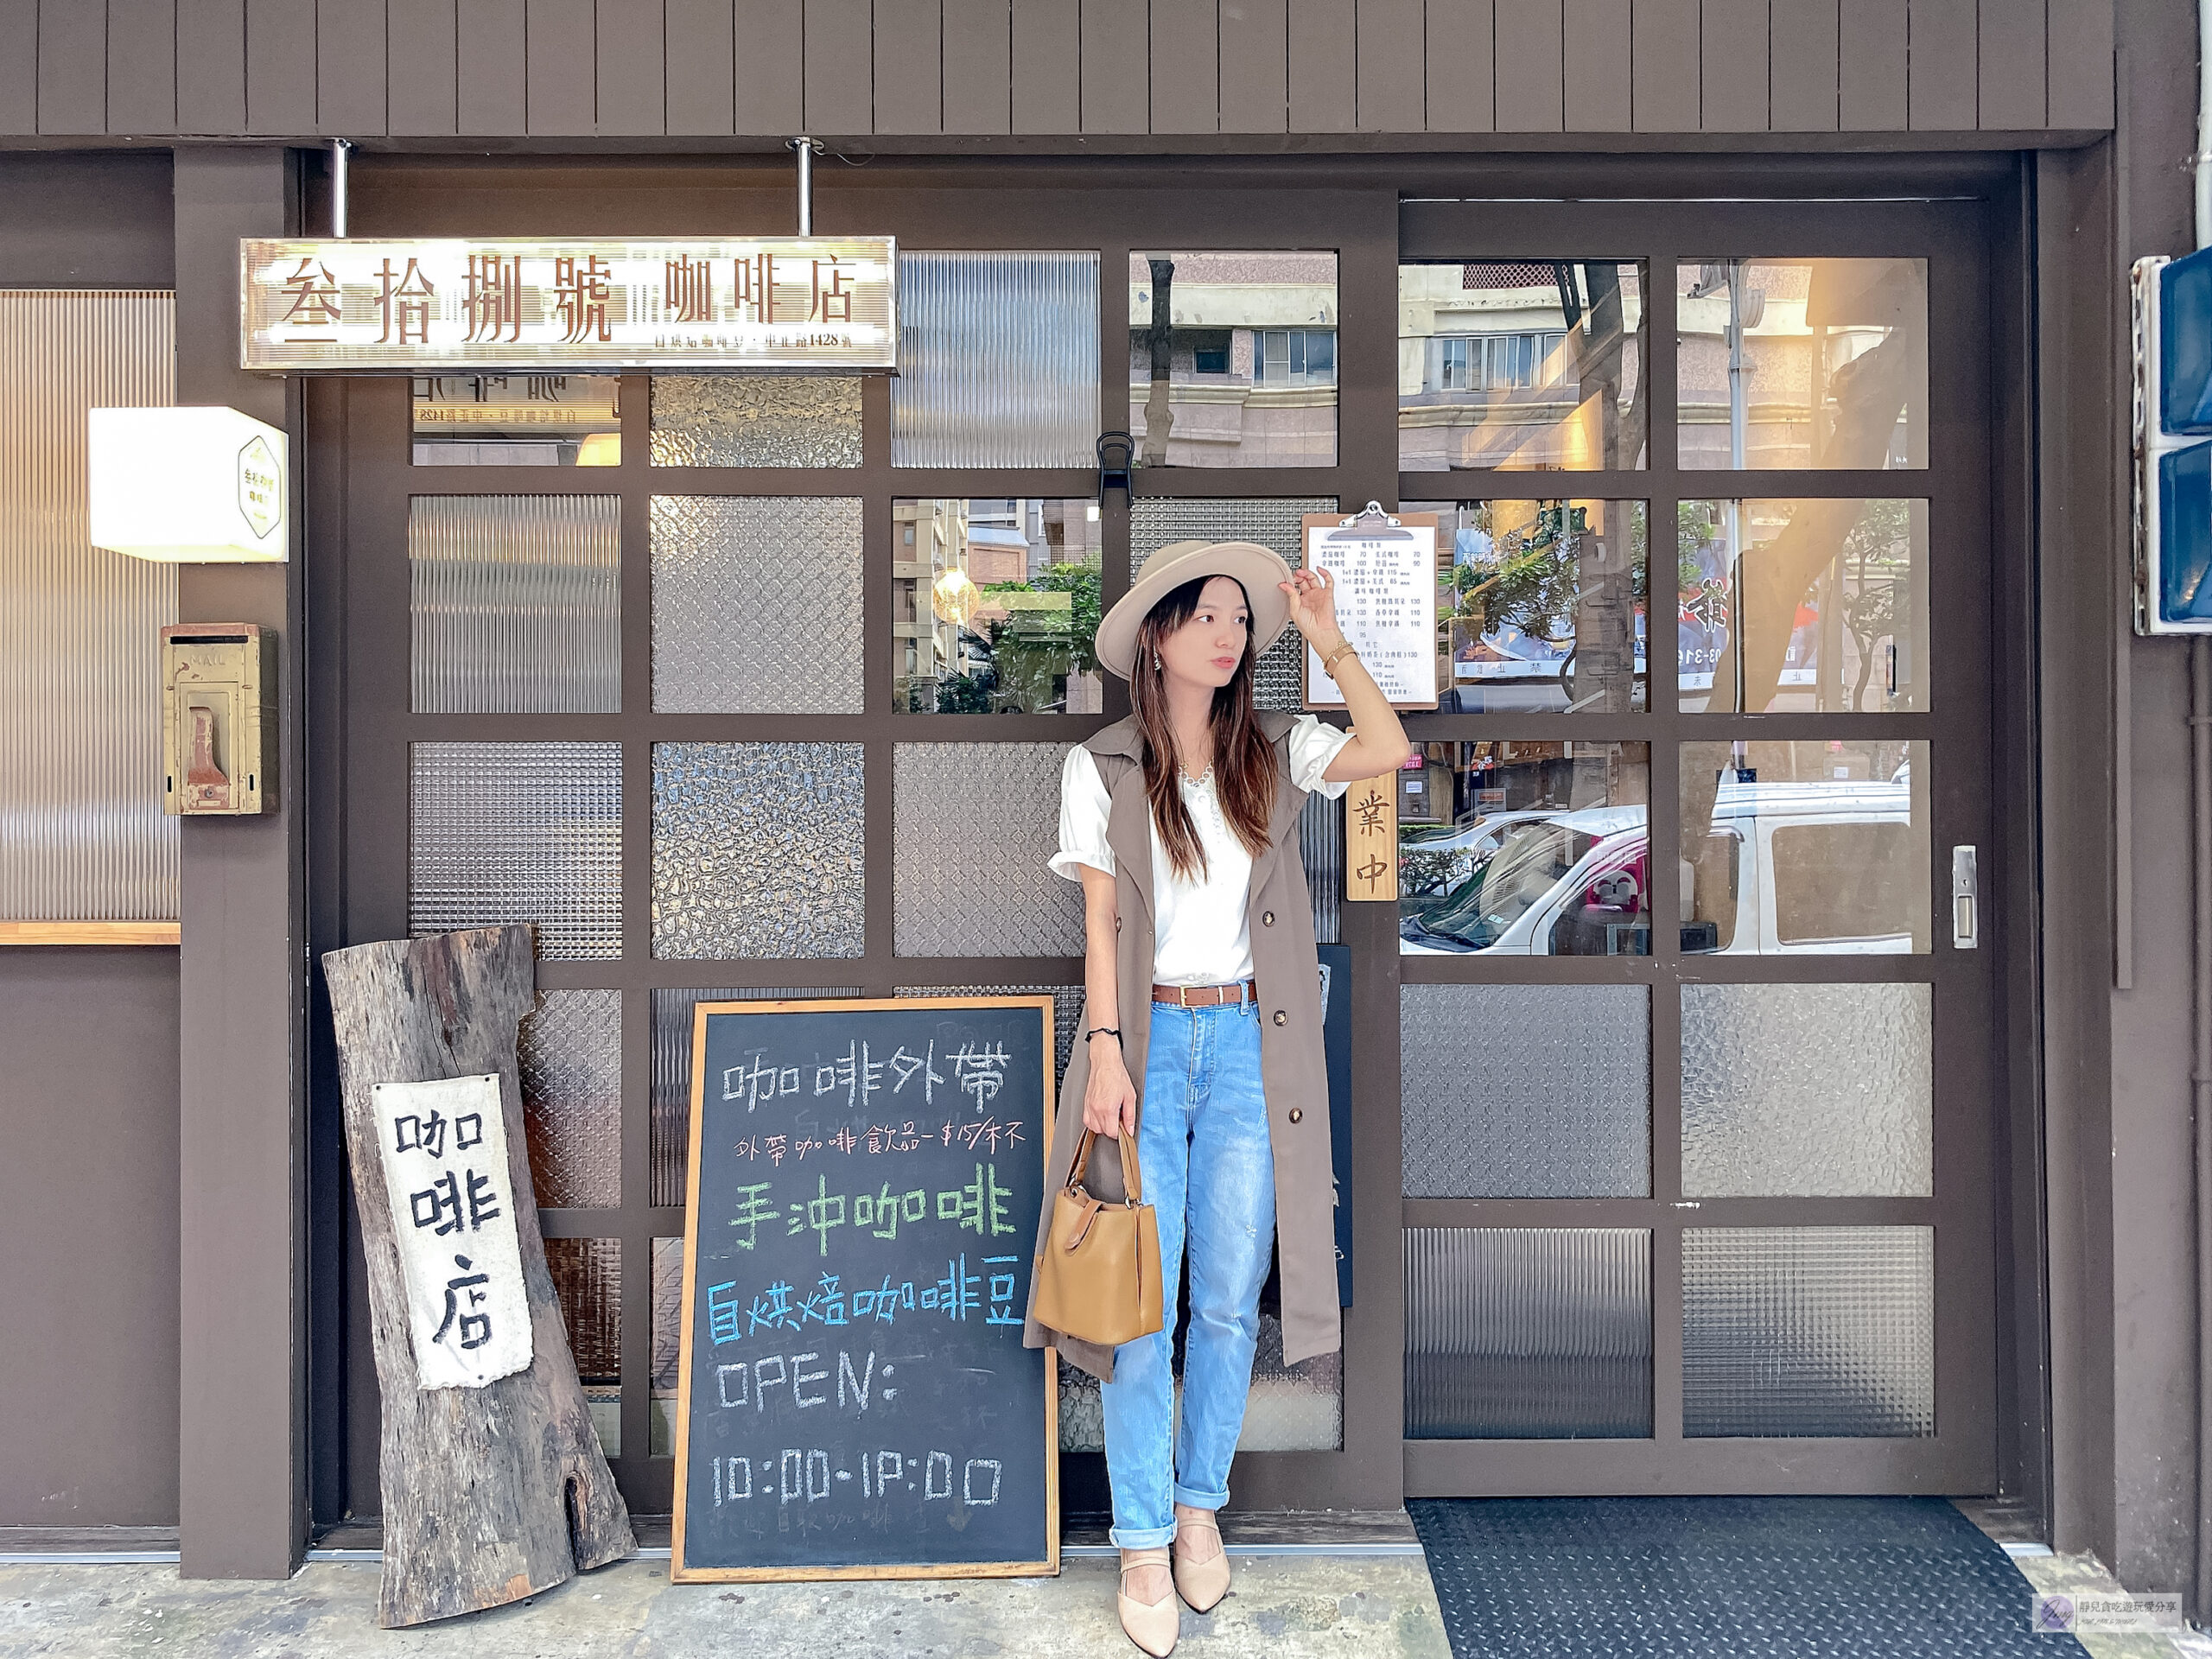 桃園美食-叁拾捌號咖啡店-秒飛到日本的日系文青風格咖啡廳/甜點 咖啡 飲品/鄰近藝文特區 @靜兒貪吃遊玩愛分享